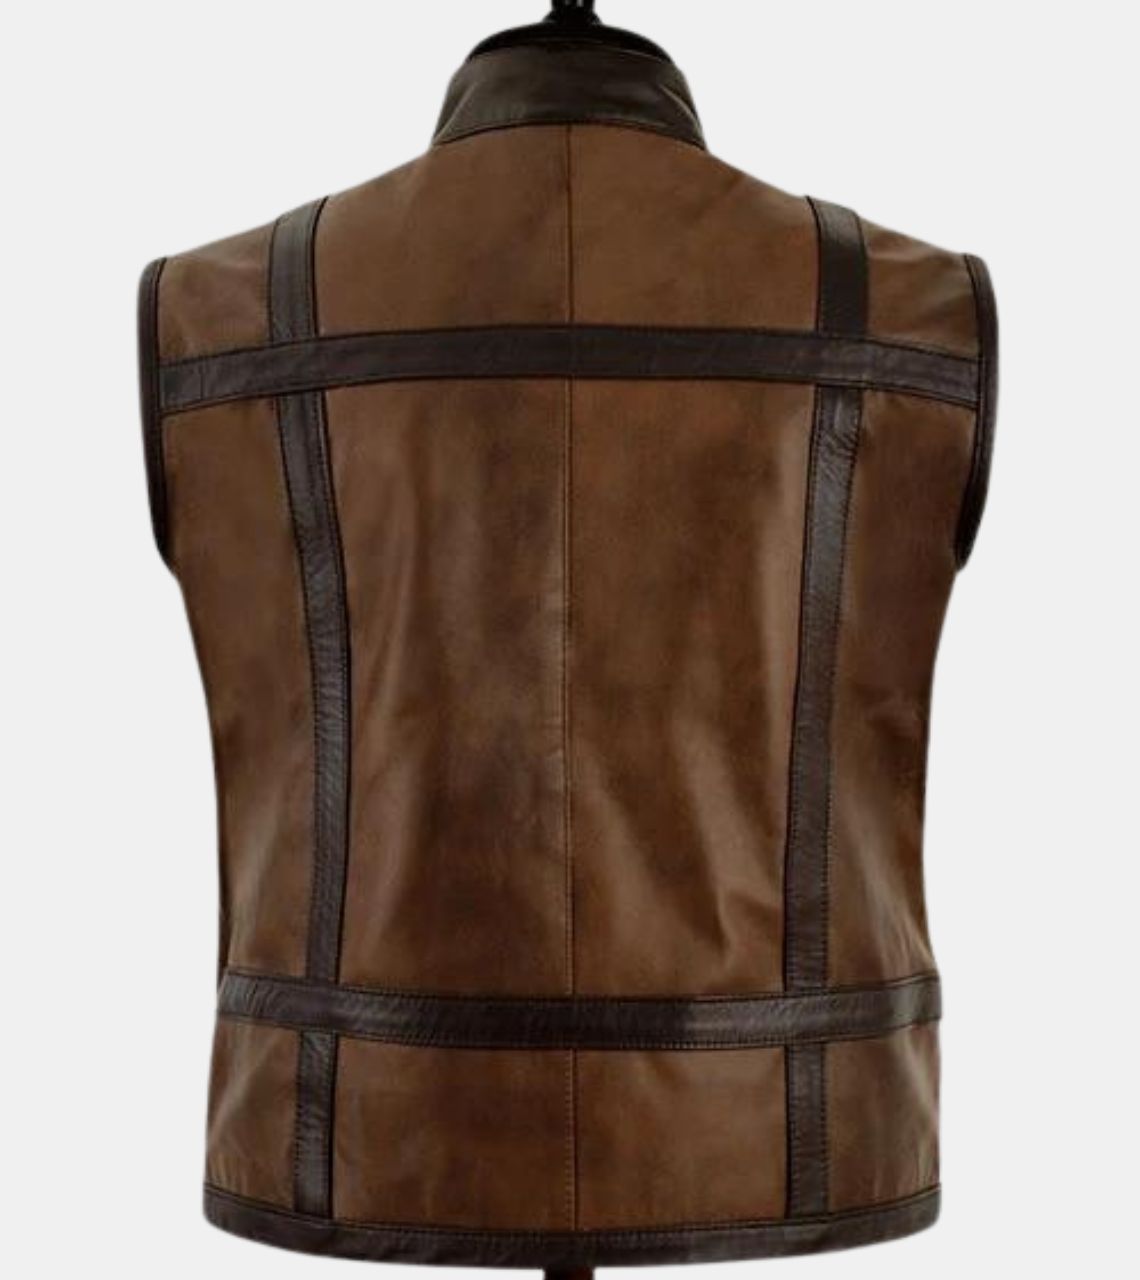  Roscode Men's Brown Leather Vest  Back